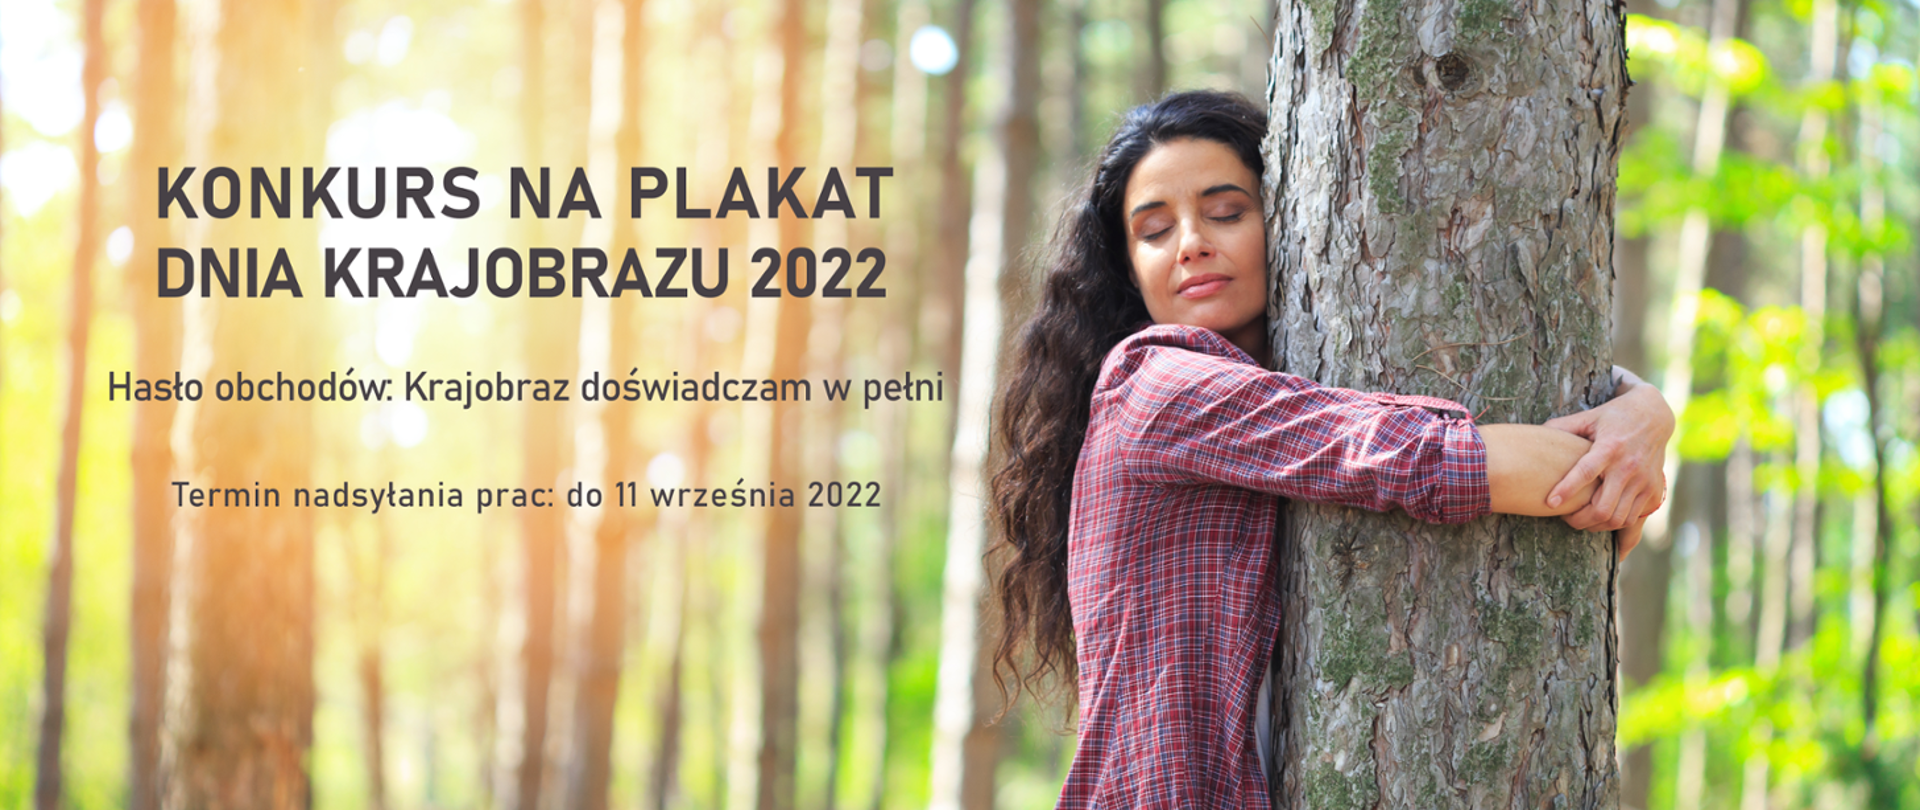 Grafika promująca konkurs na plakat z okazji Dnia Krajobrazu 2022